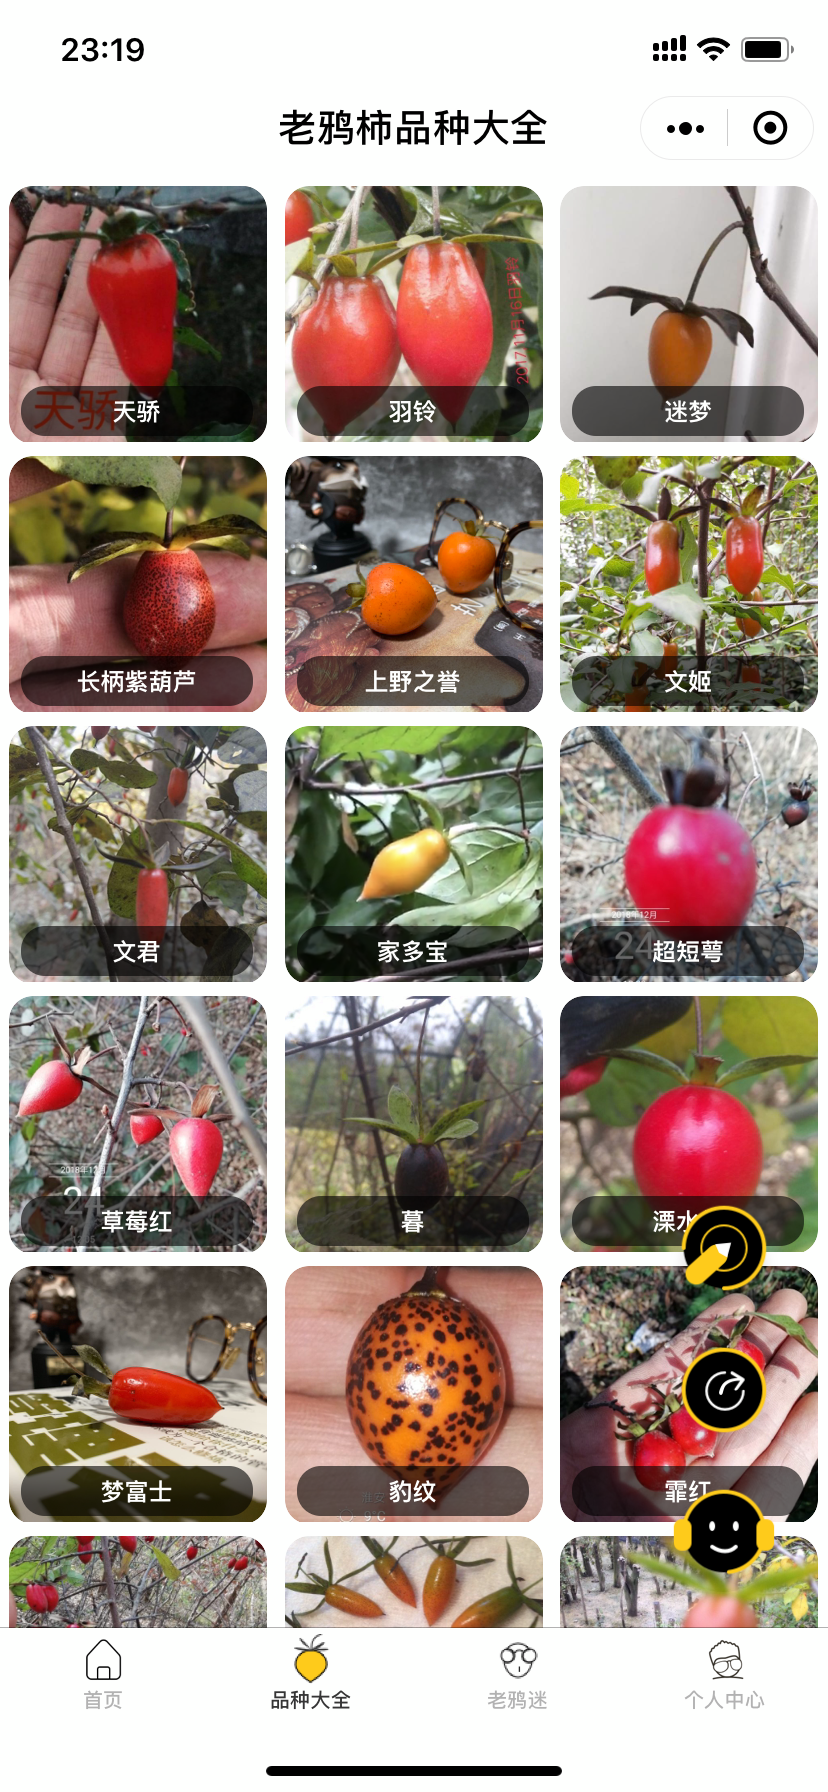 日本老鸦柿品种图册图片